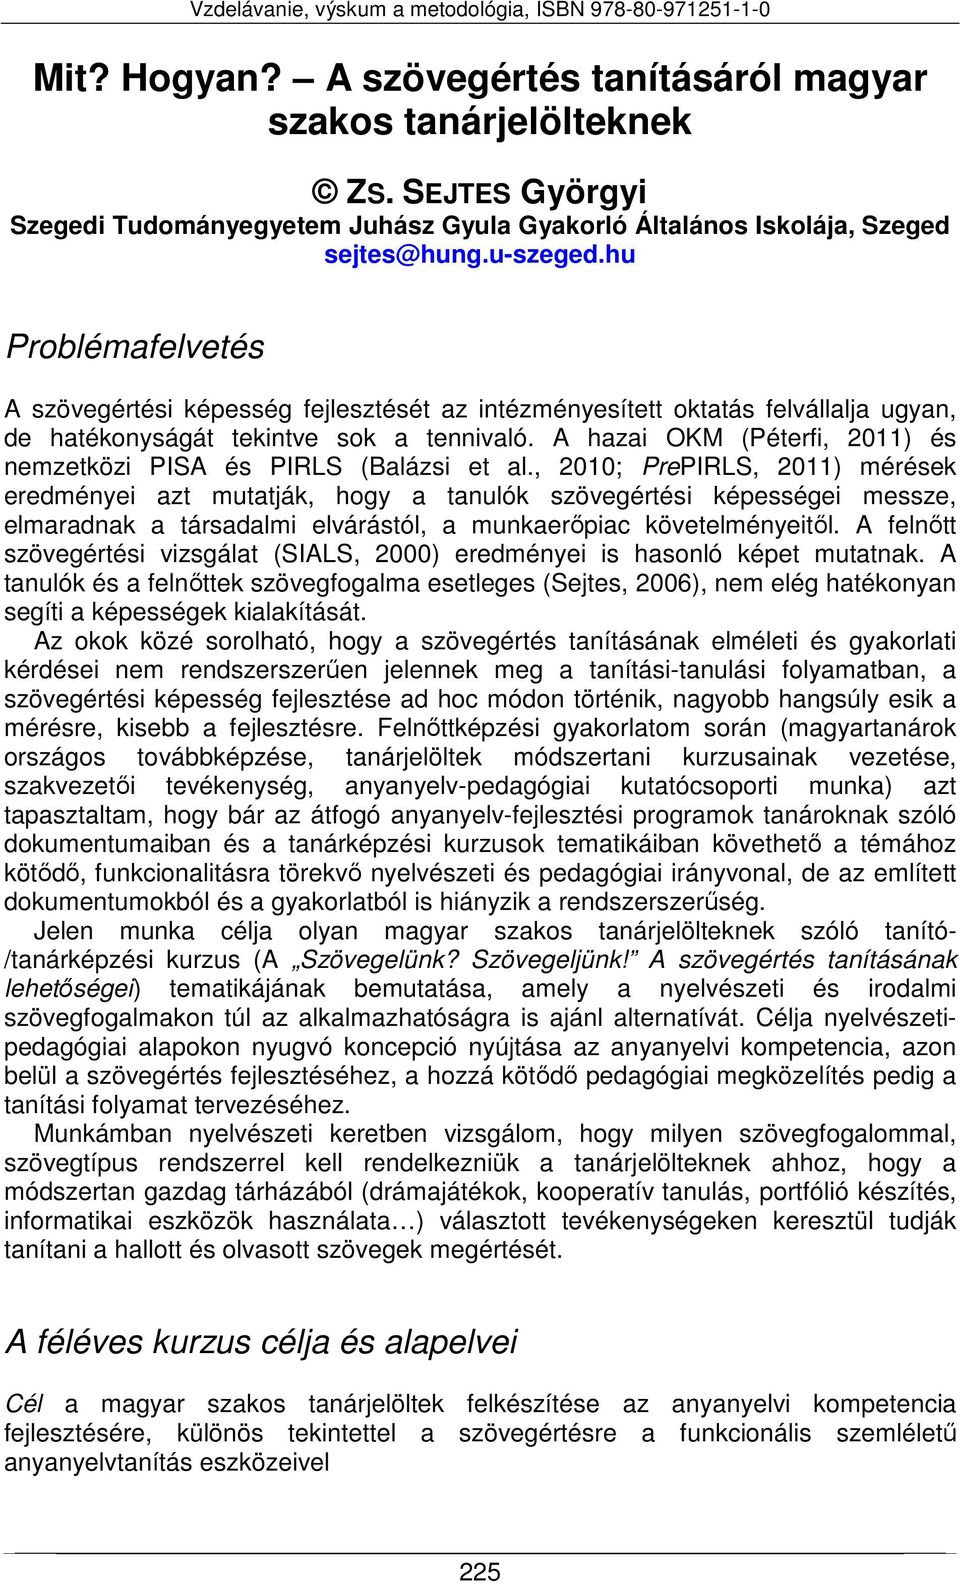 Mit? Hogyan? A szövegértés tanításáról magyar szakos tanárjelölteknek - PDF  Free Download